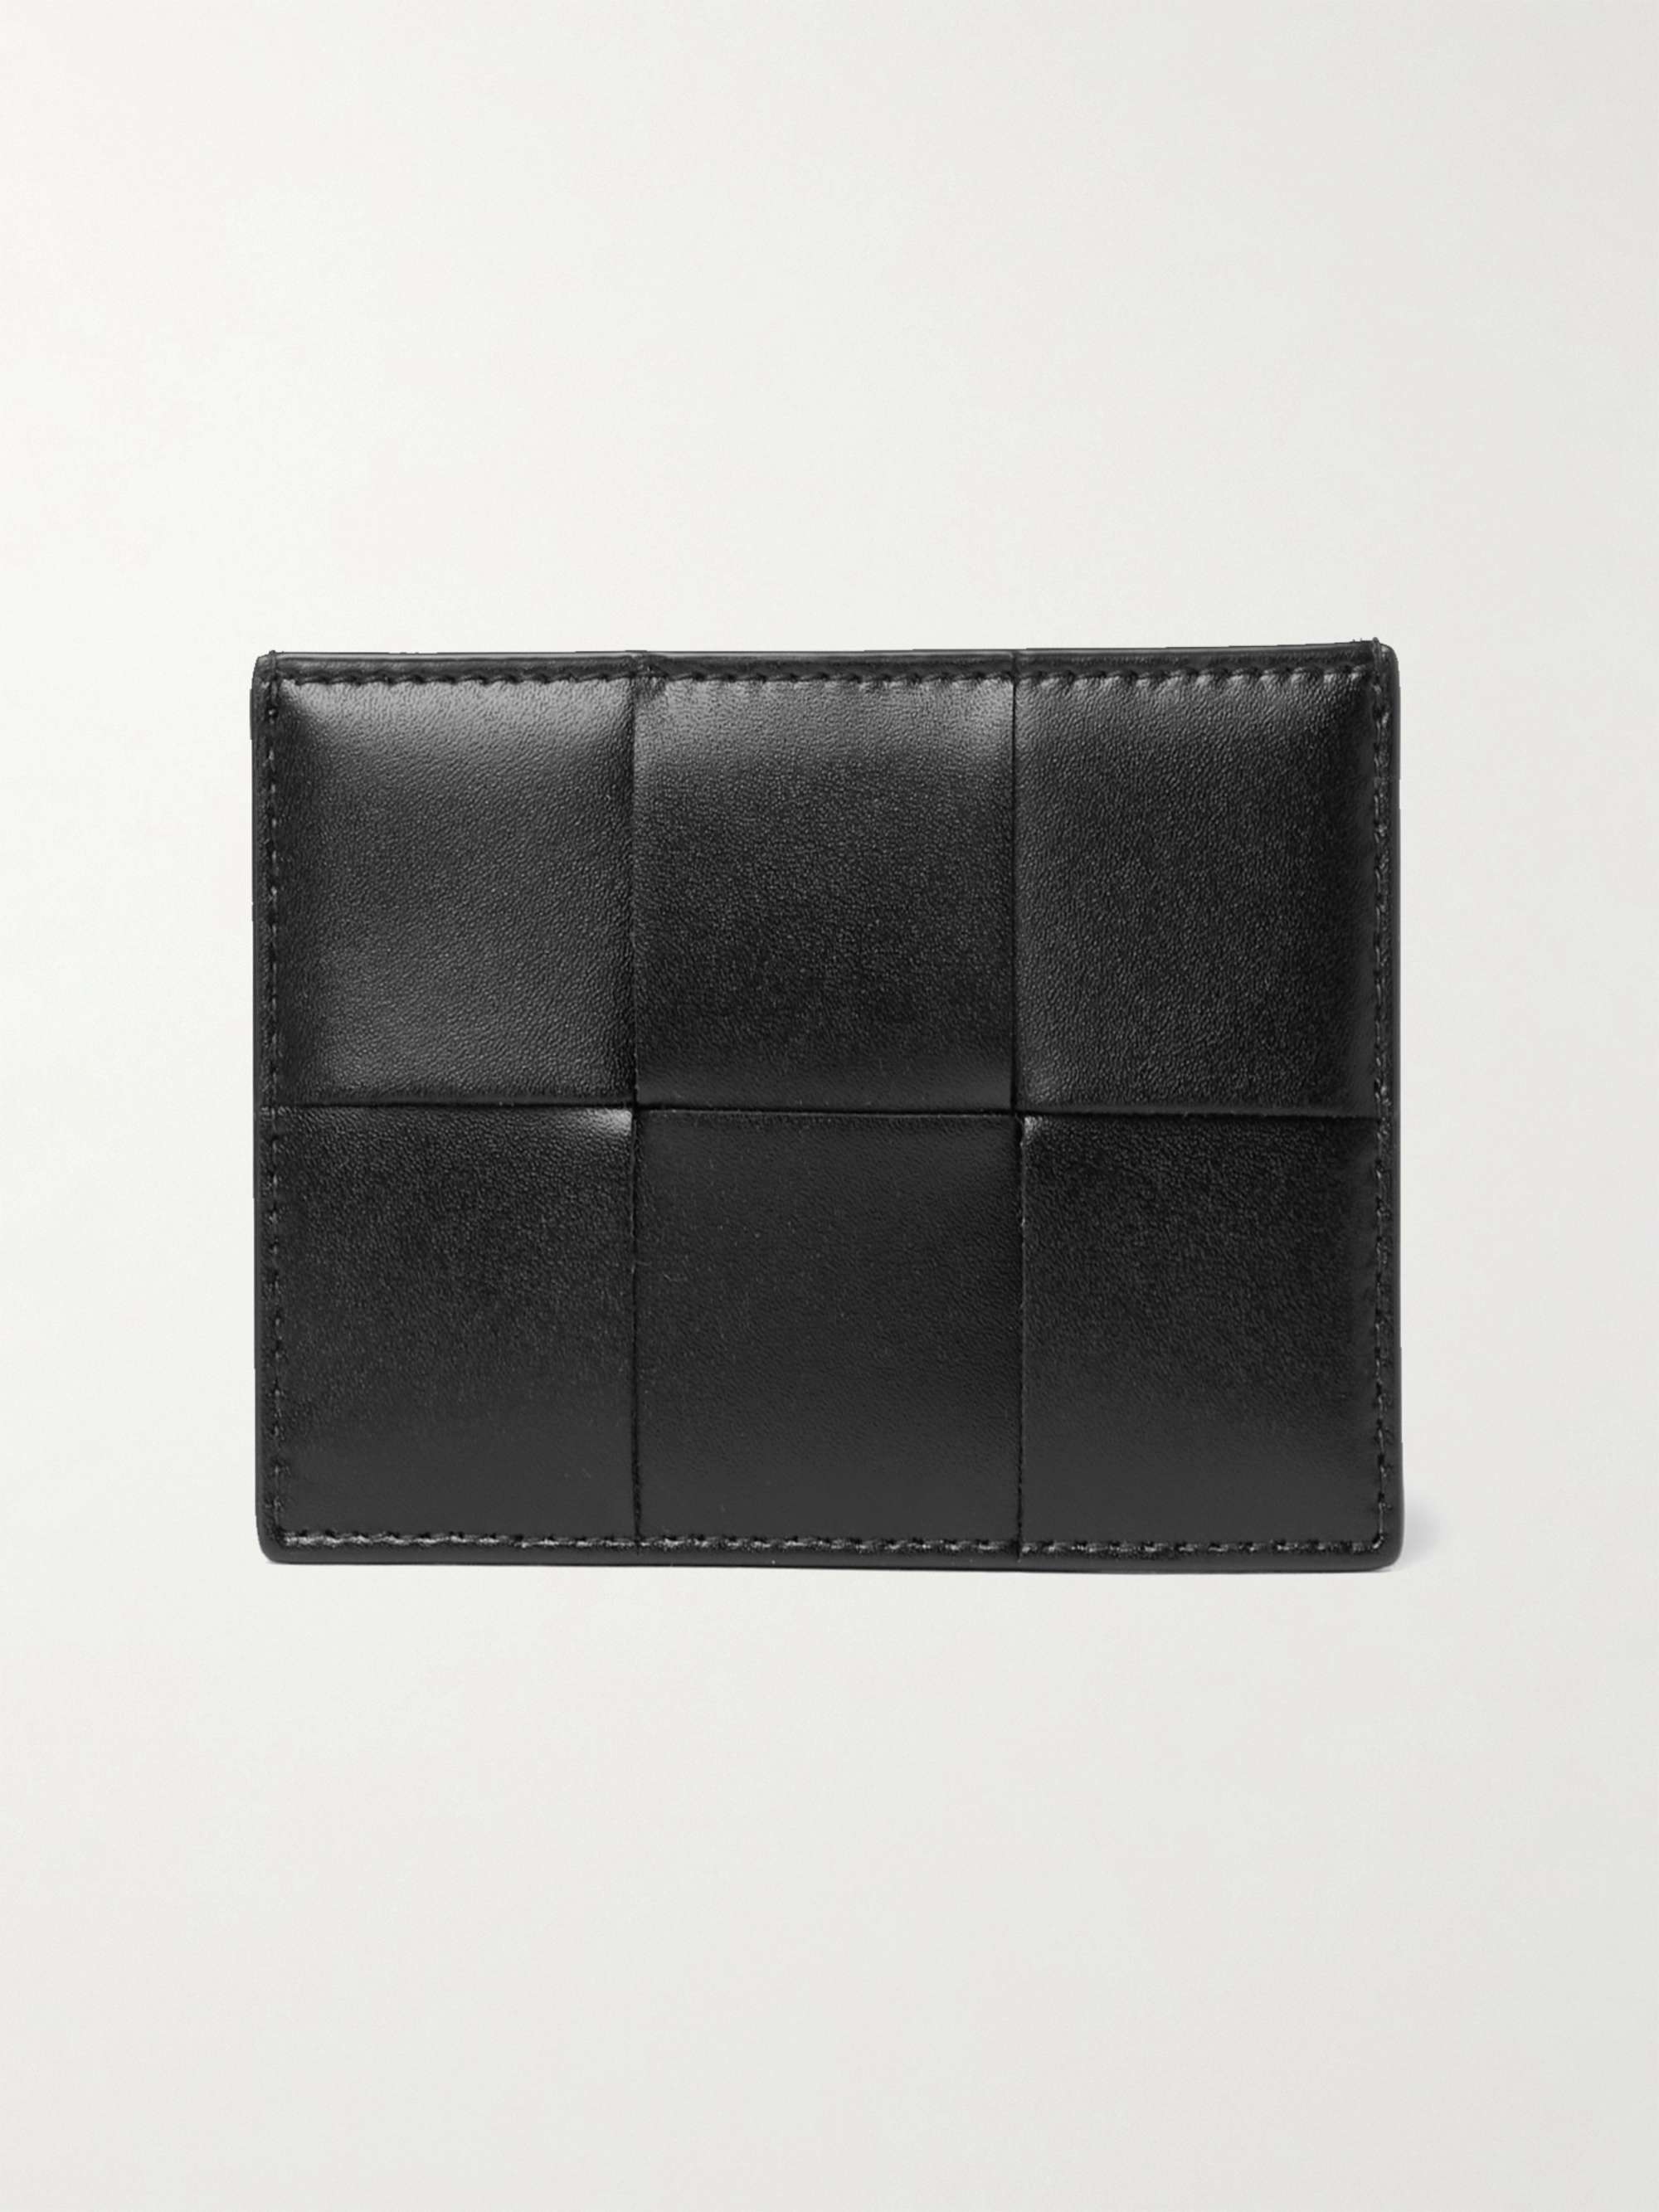 BOTTEGA VENETA Intrecciato Leather Cardholder for Men